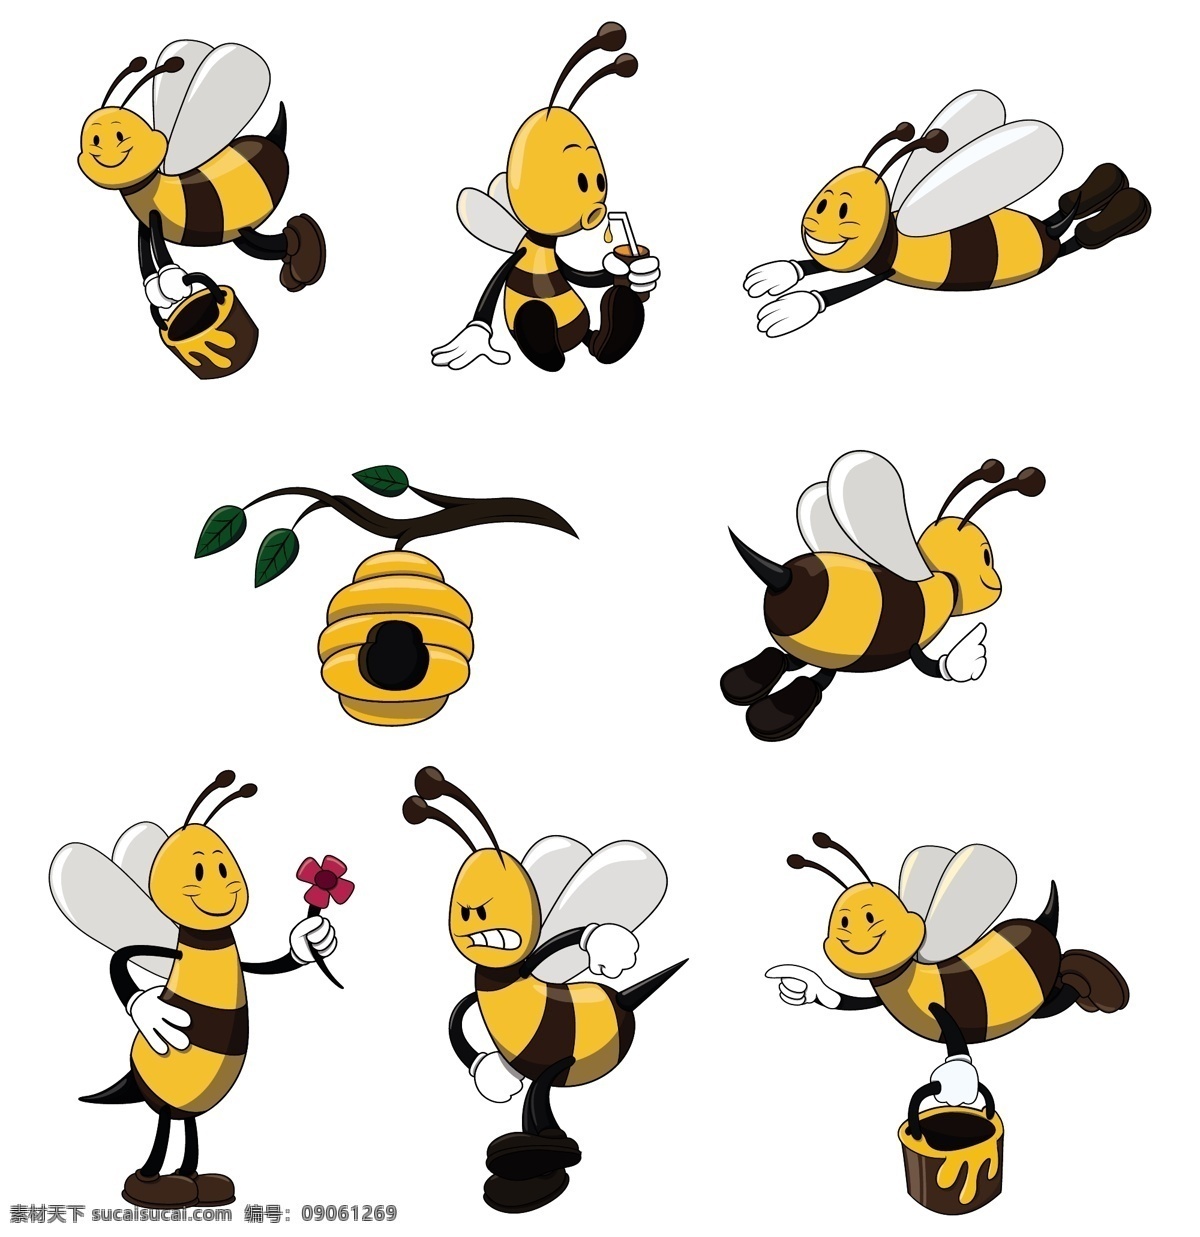 可爱 黄色 蜜蜂 矢量 可爱黄色蜜蜂 矢量素材 花卉 蜂巢 蜂蜜 精美 装饰 时尚背景 酷炫 潮流 背景 矢量图 背景图 底图 包装设计 设计元素 科技 板报 海报 模板 办公 企划 动物 昆虫类 生物世界 昆虫